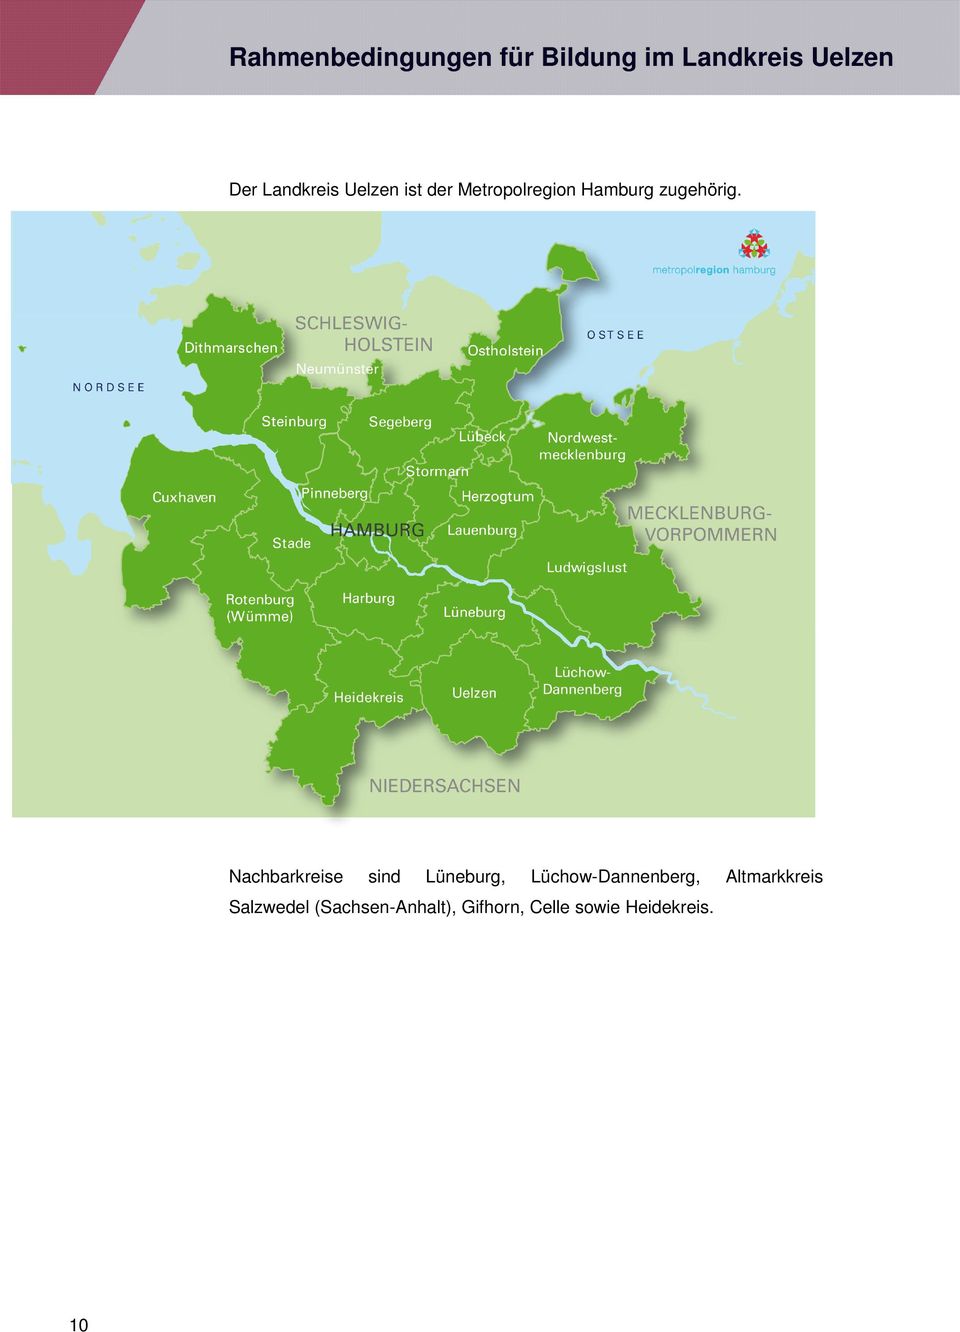 Nachbarkreise sind Lüneburg, Lüchow-Dannenberg, Salzwedel